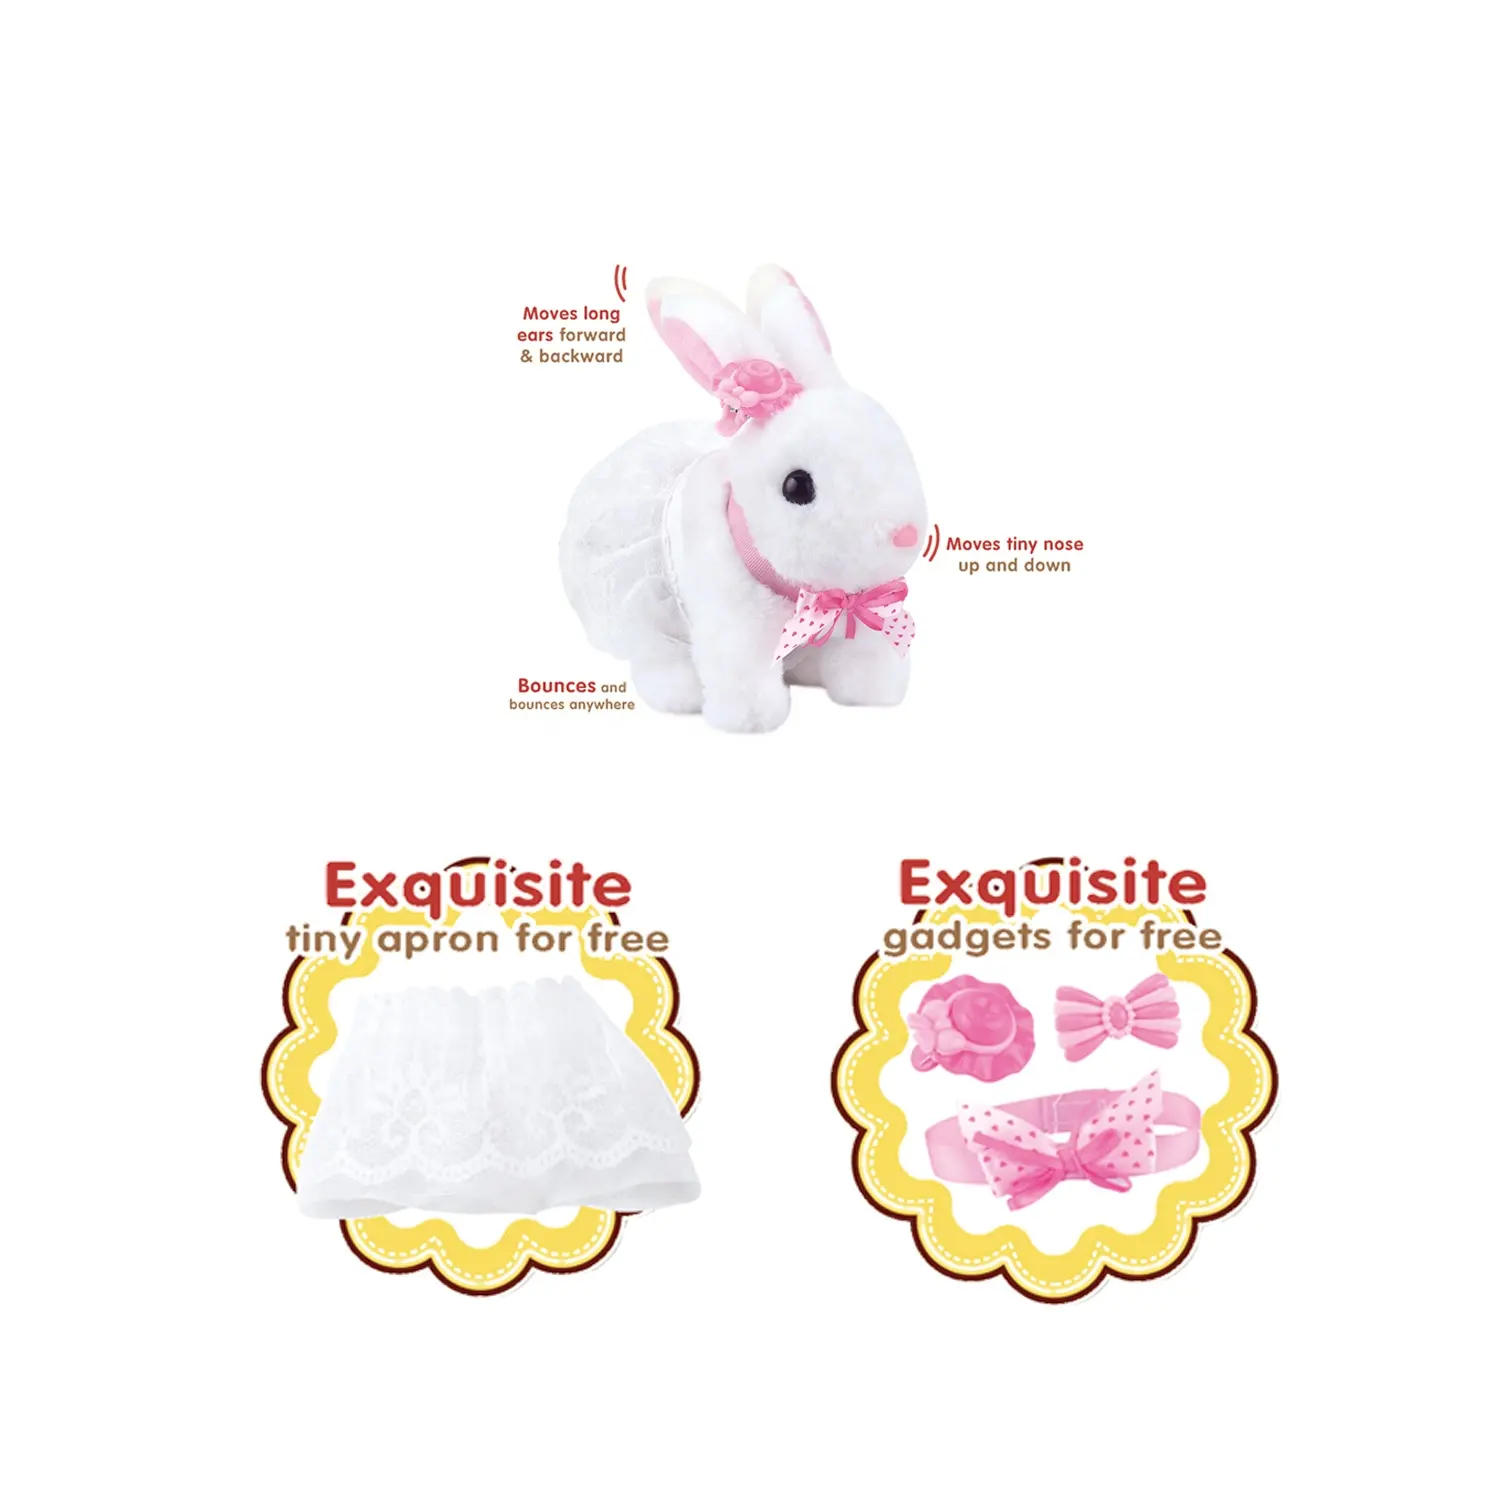 B/O-conejo de peluche suave e inteligente, con accesorios, se mueve y rebota en cualquier lugar, animal eléctrico, juguetes para niños